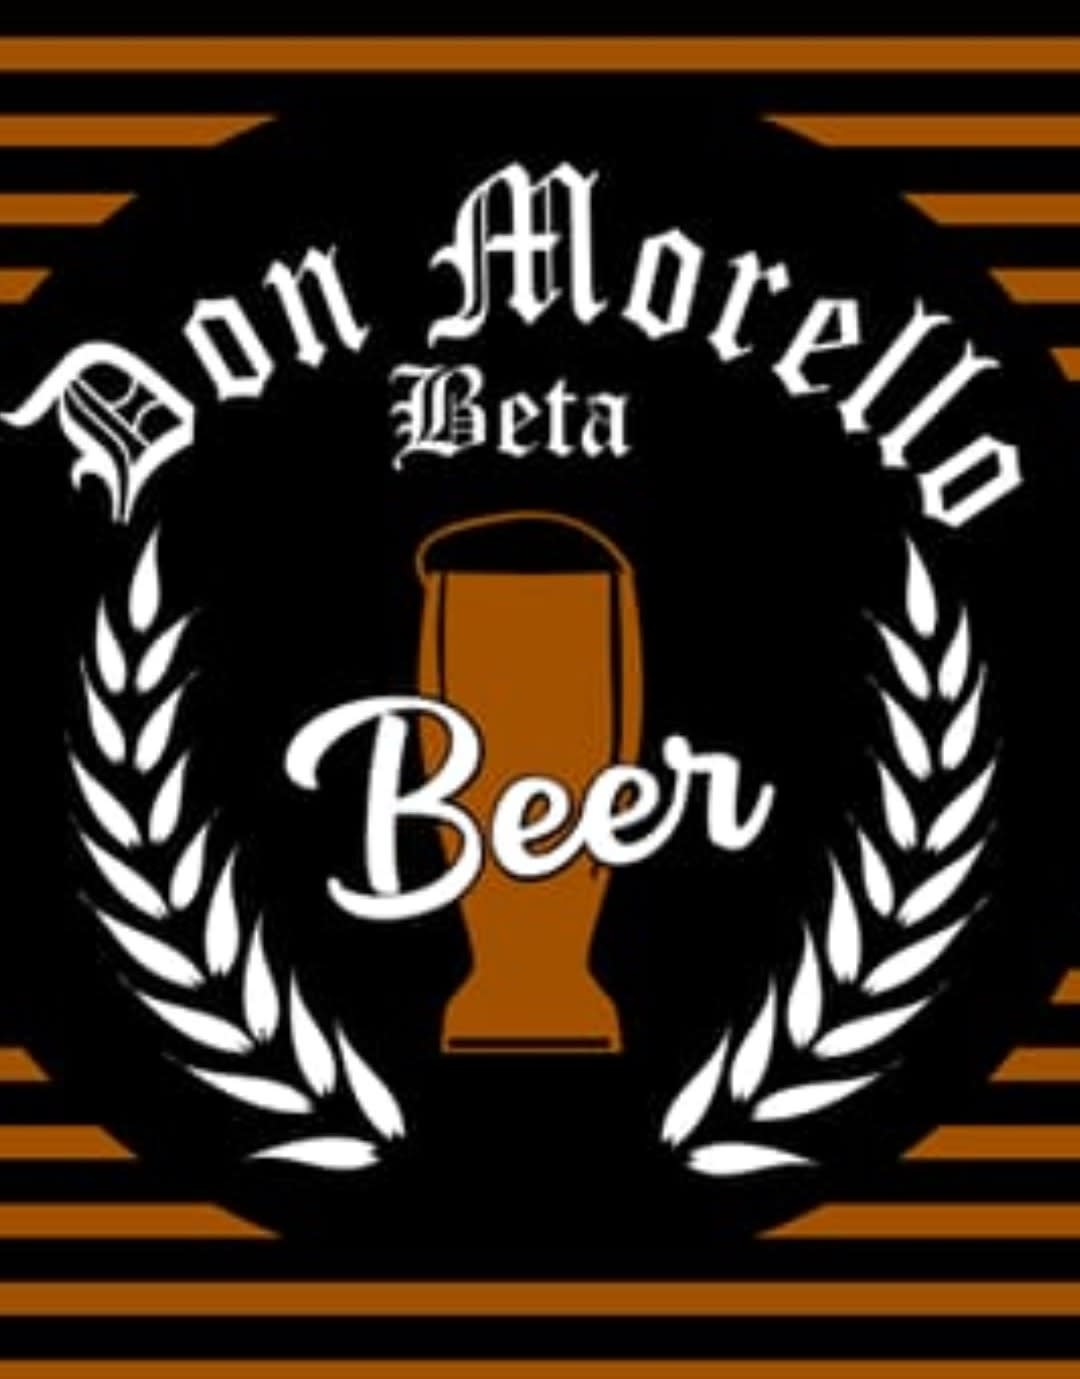 Don Morello Beta Beer